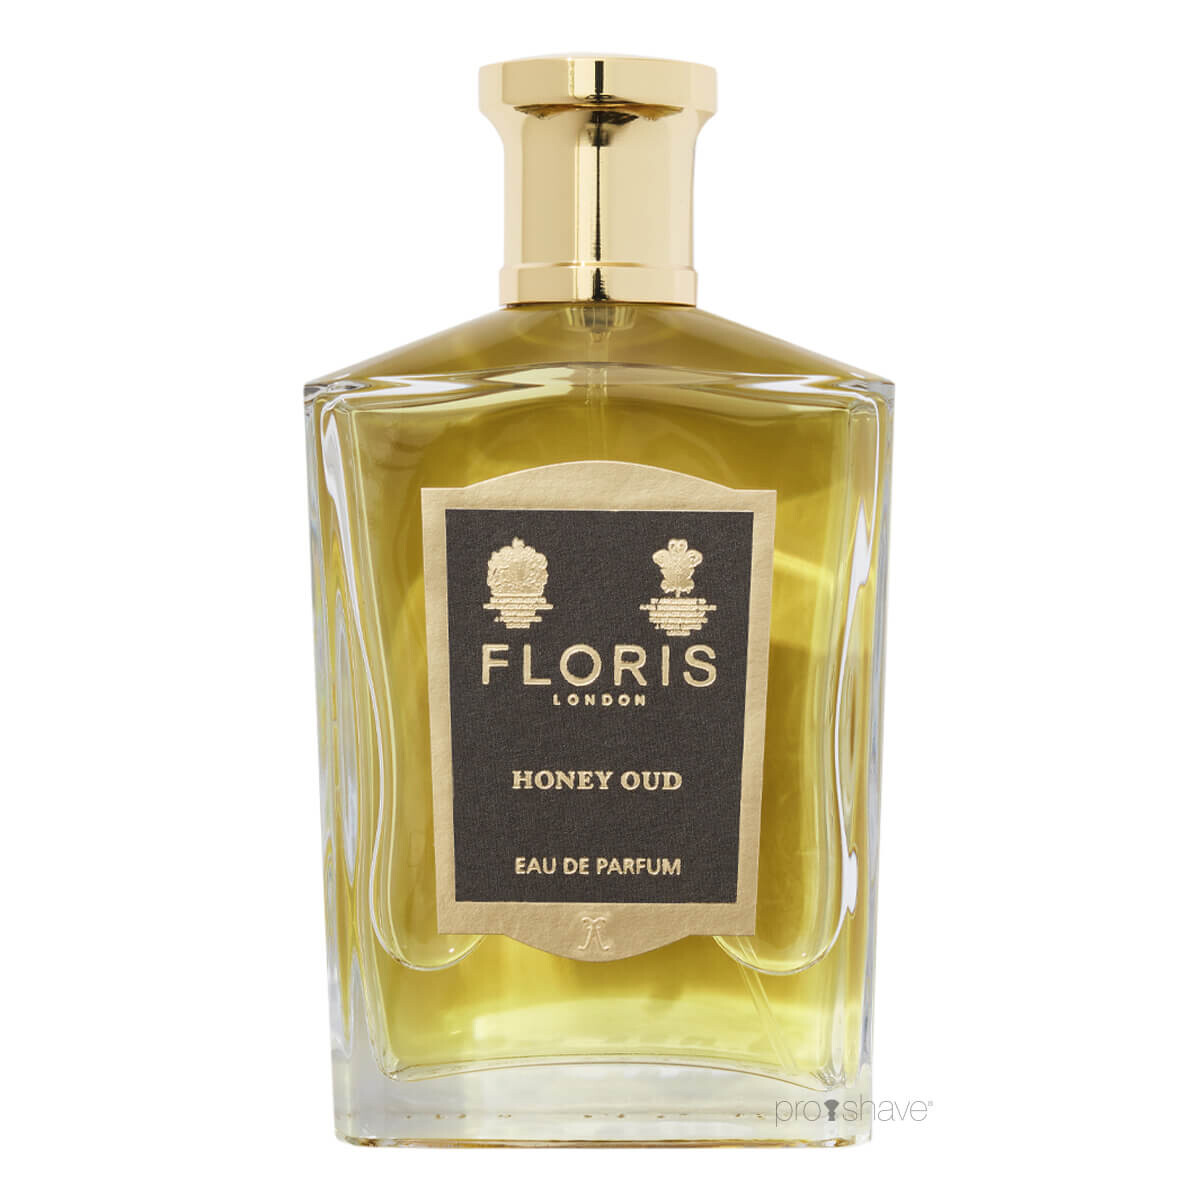 Billede af Floris Honey Oud, Eau de Parfum, 100 ml.